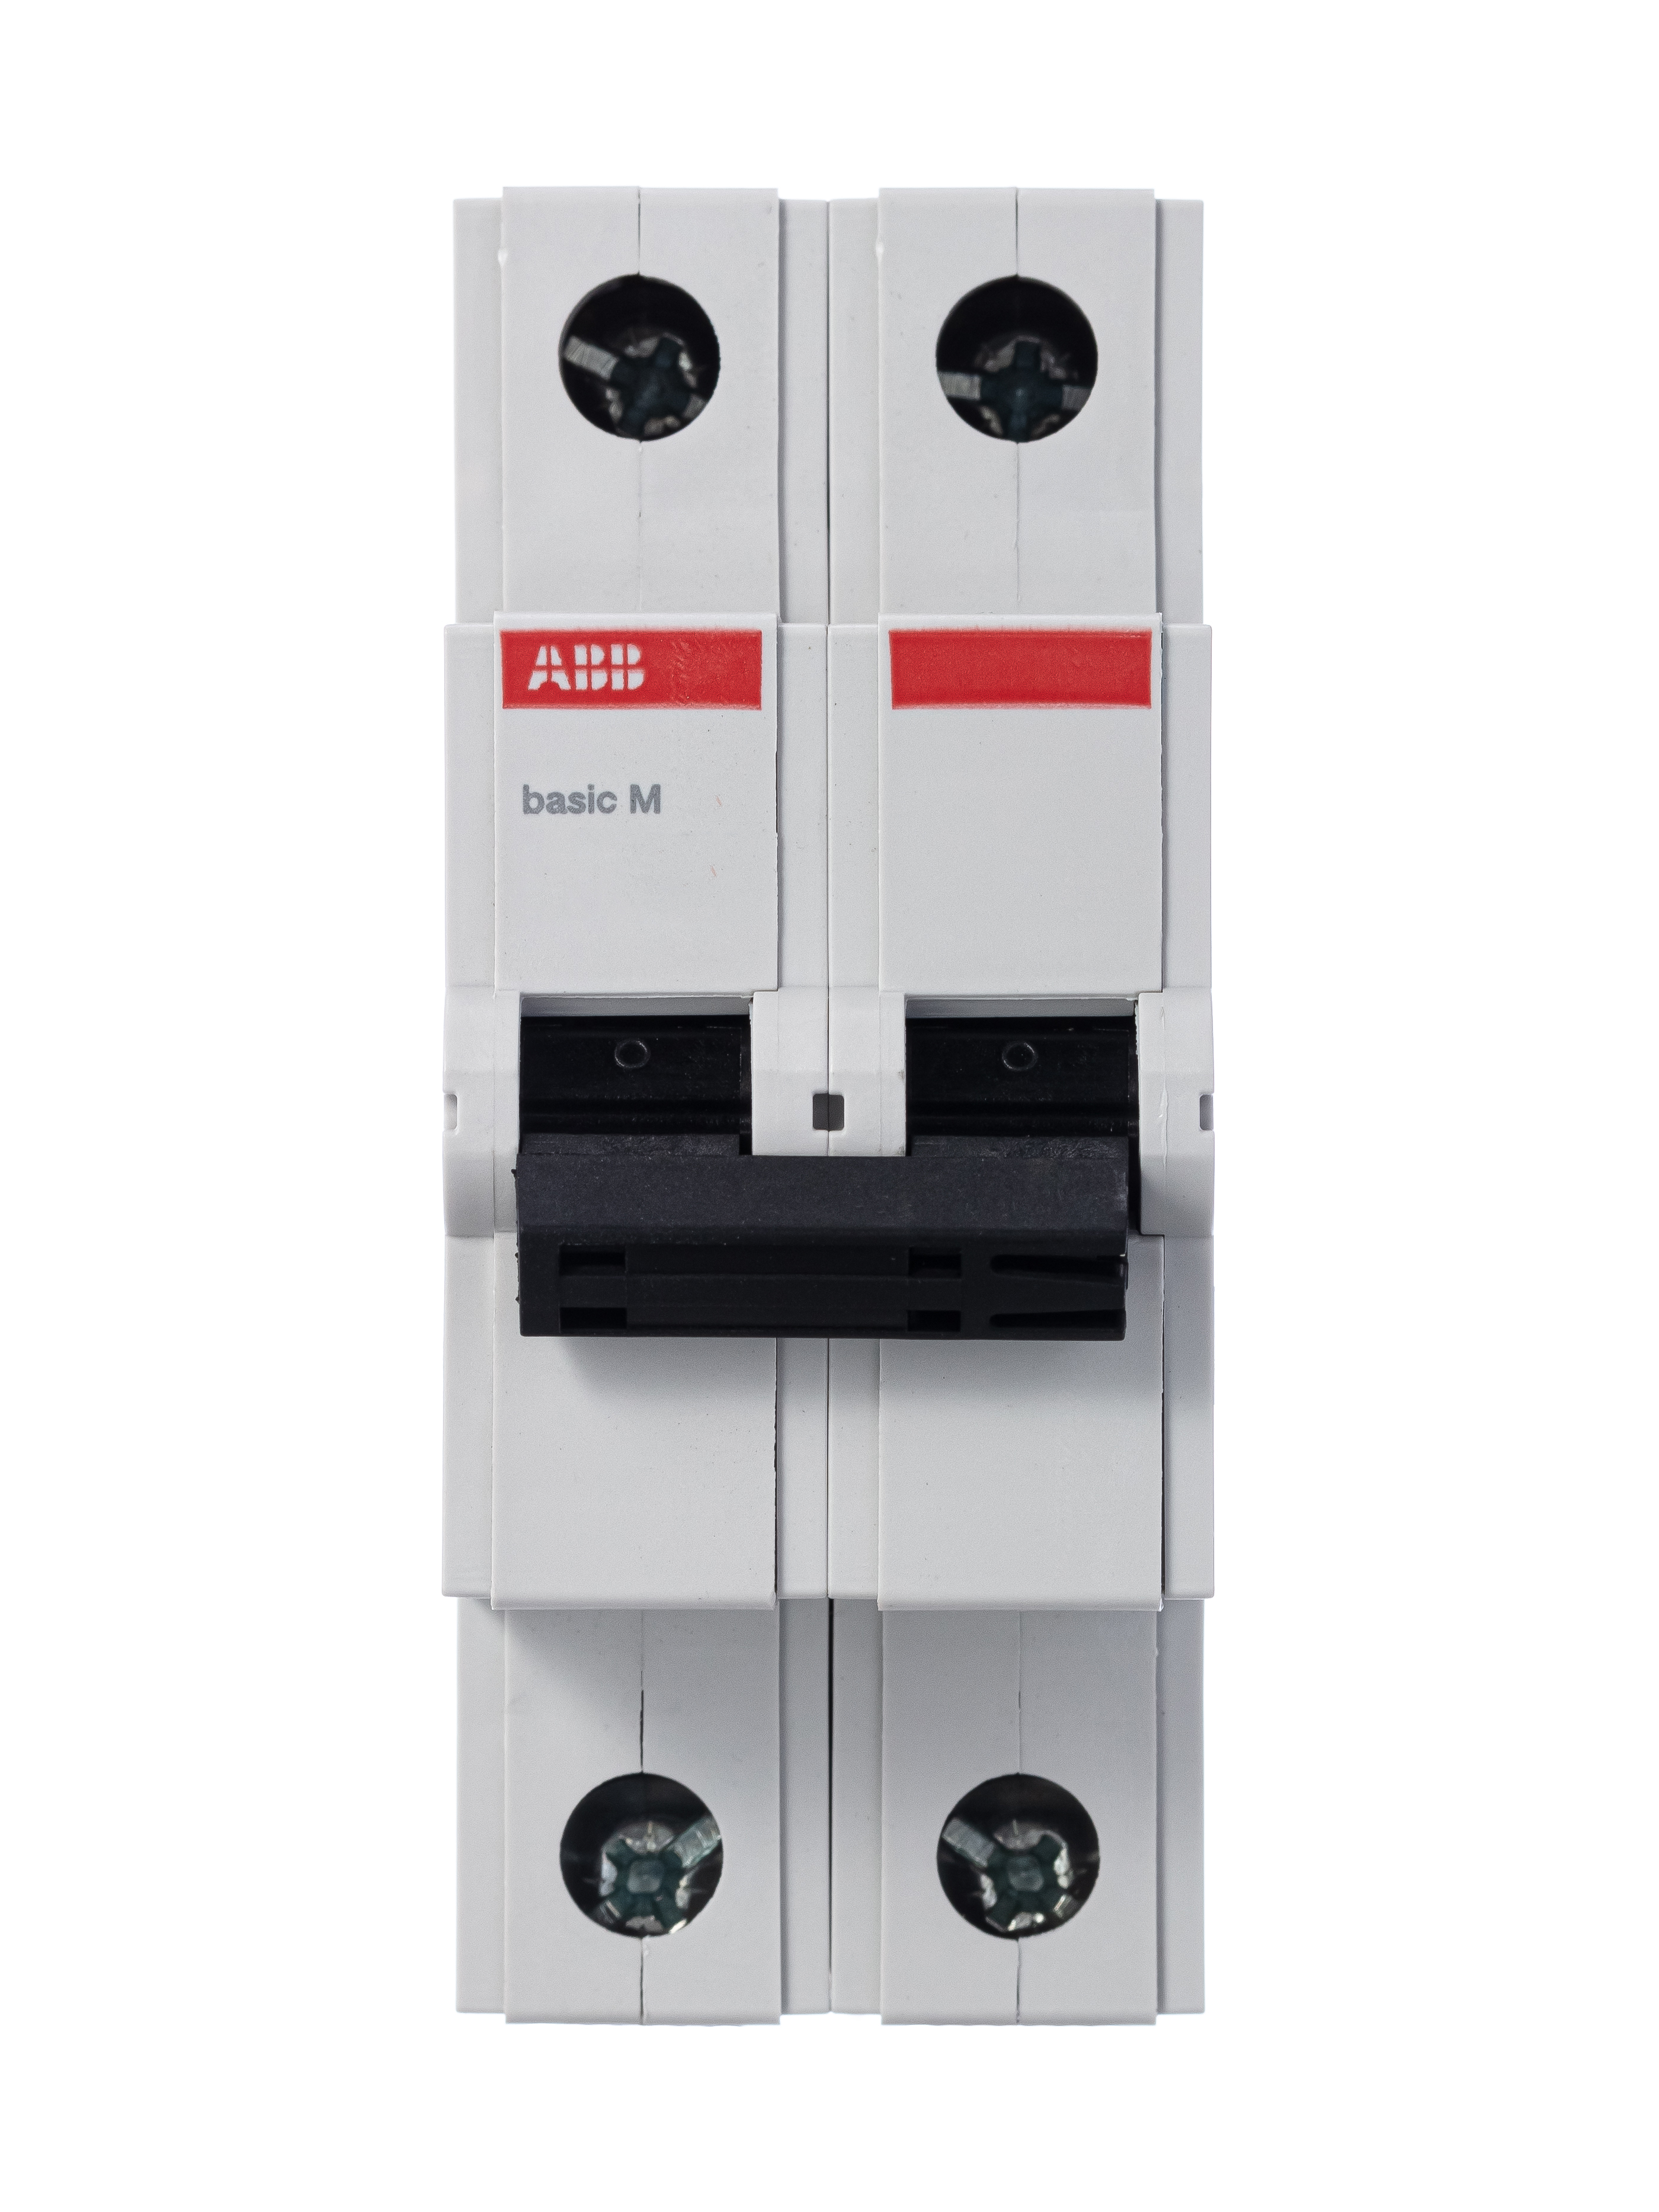 Автоматический выключатель дифференциального тока abb. ABB дифференциальный автоматический выключатель dsh201r c16 ac30. Автомат ABB bms412c06. Автоматический выключатель ABB 2p 40а. Автоматический выключатель ABB bms412c25.